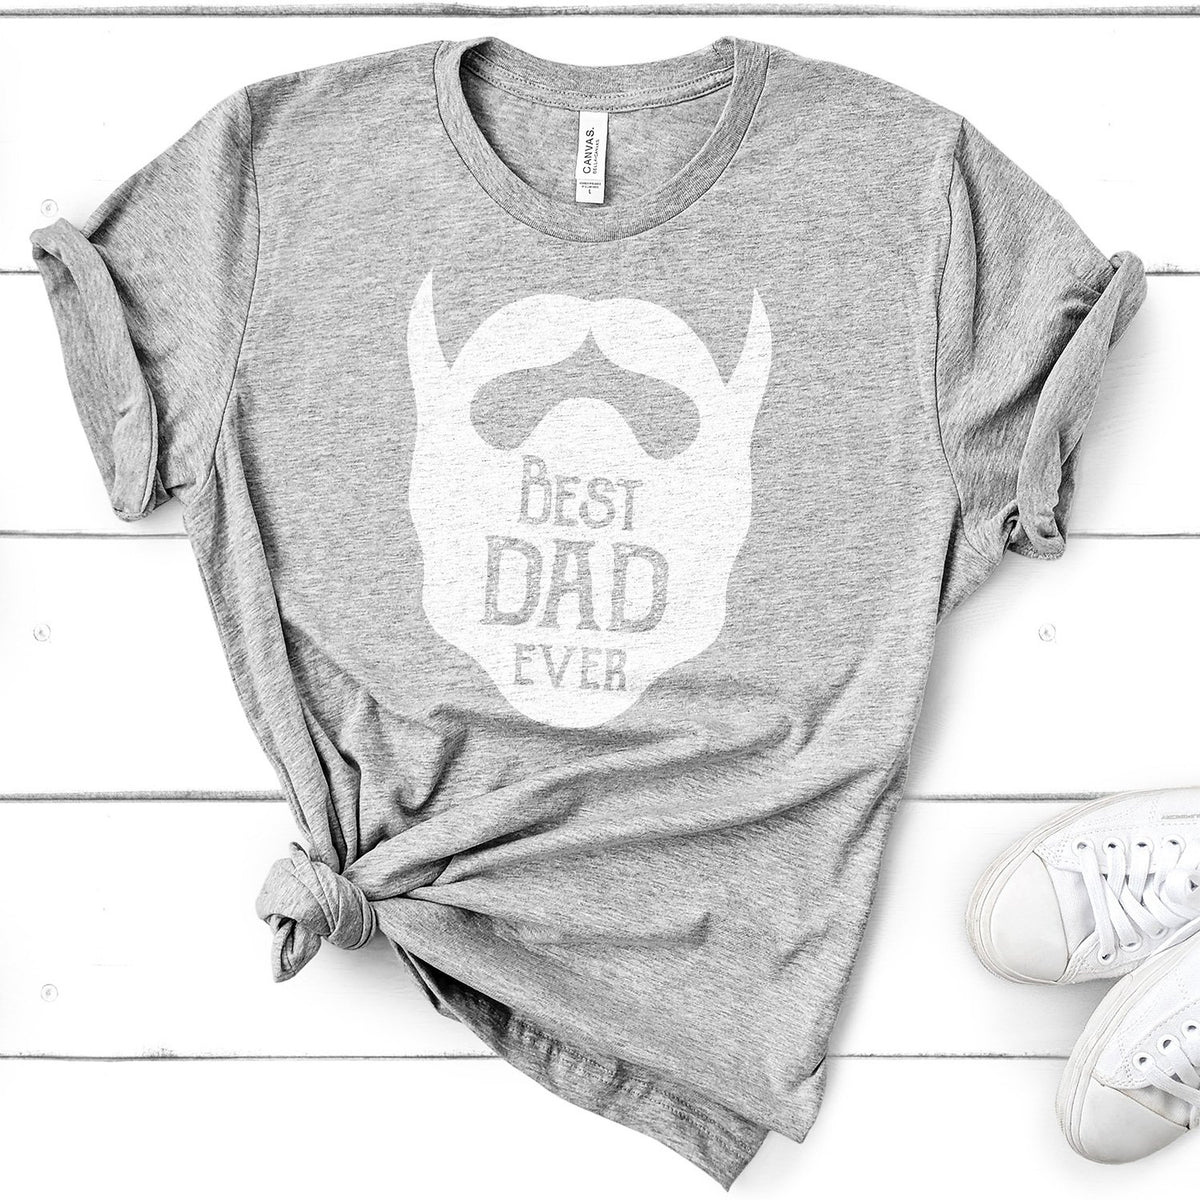 Best Dad Ever Beard - Short Sleeve Tee Shirt